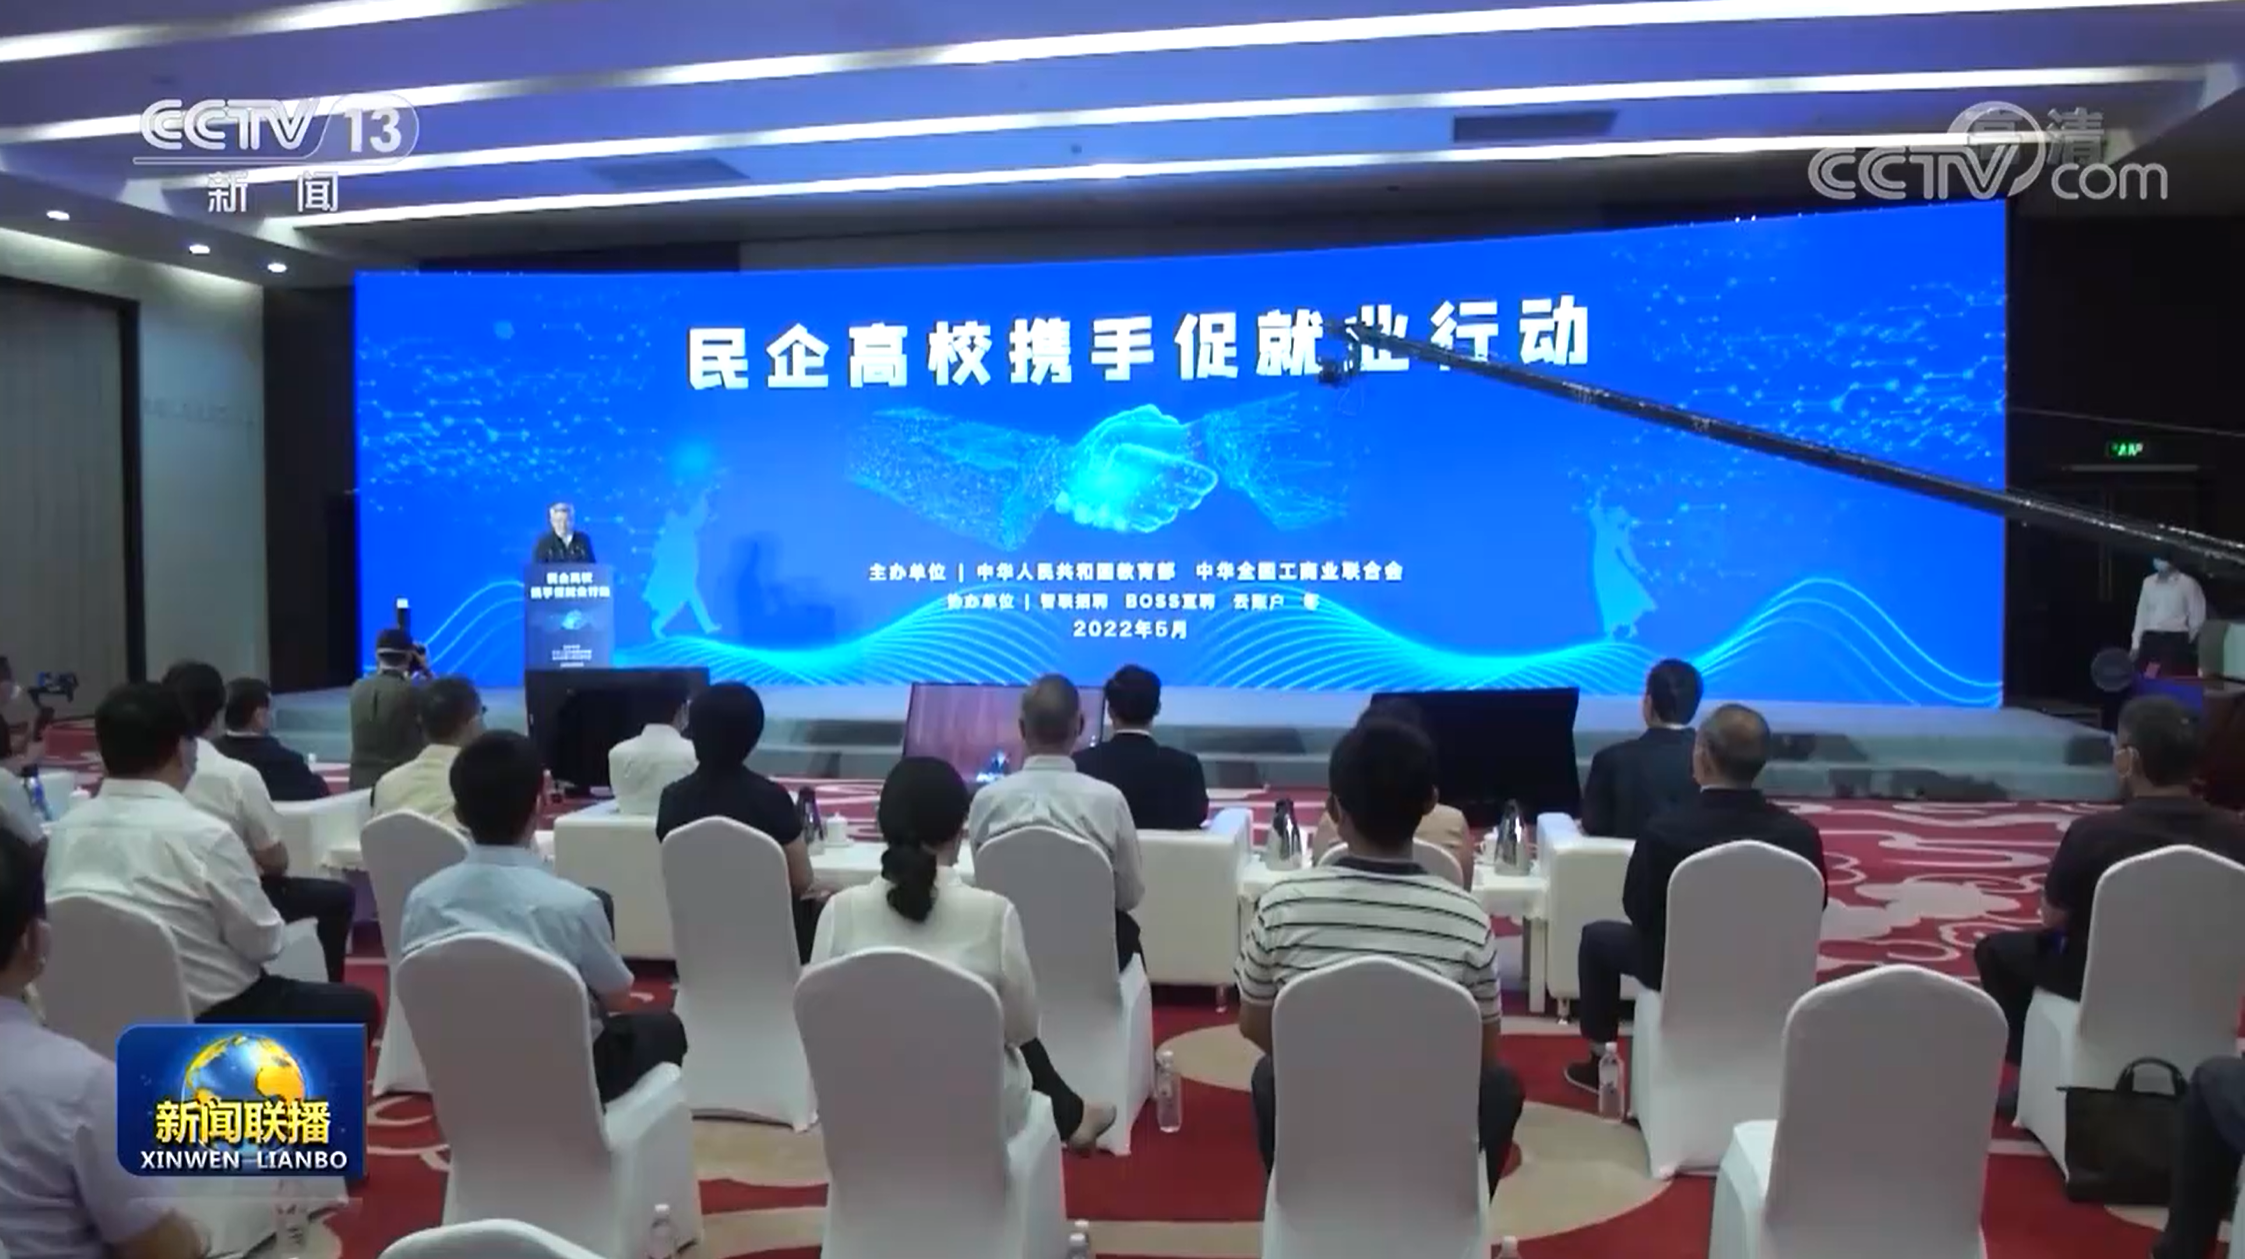 云账户董事长杨晖出席2021网信企业发展和社会责任论坛并作演讲 191